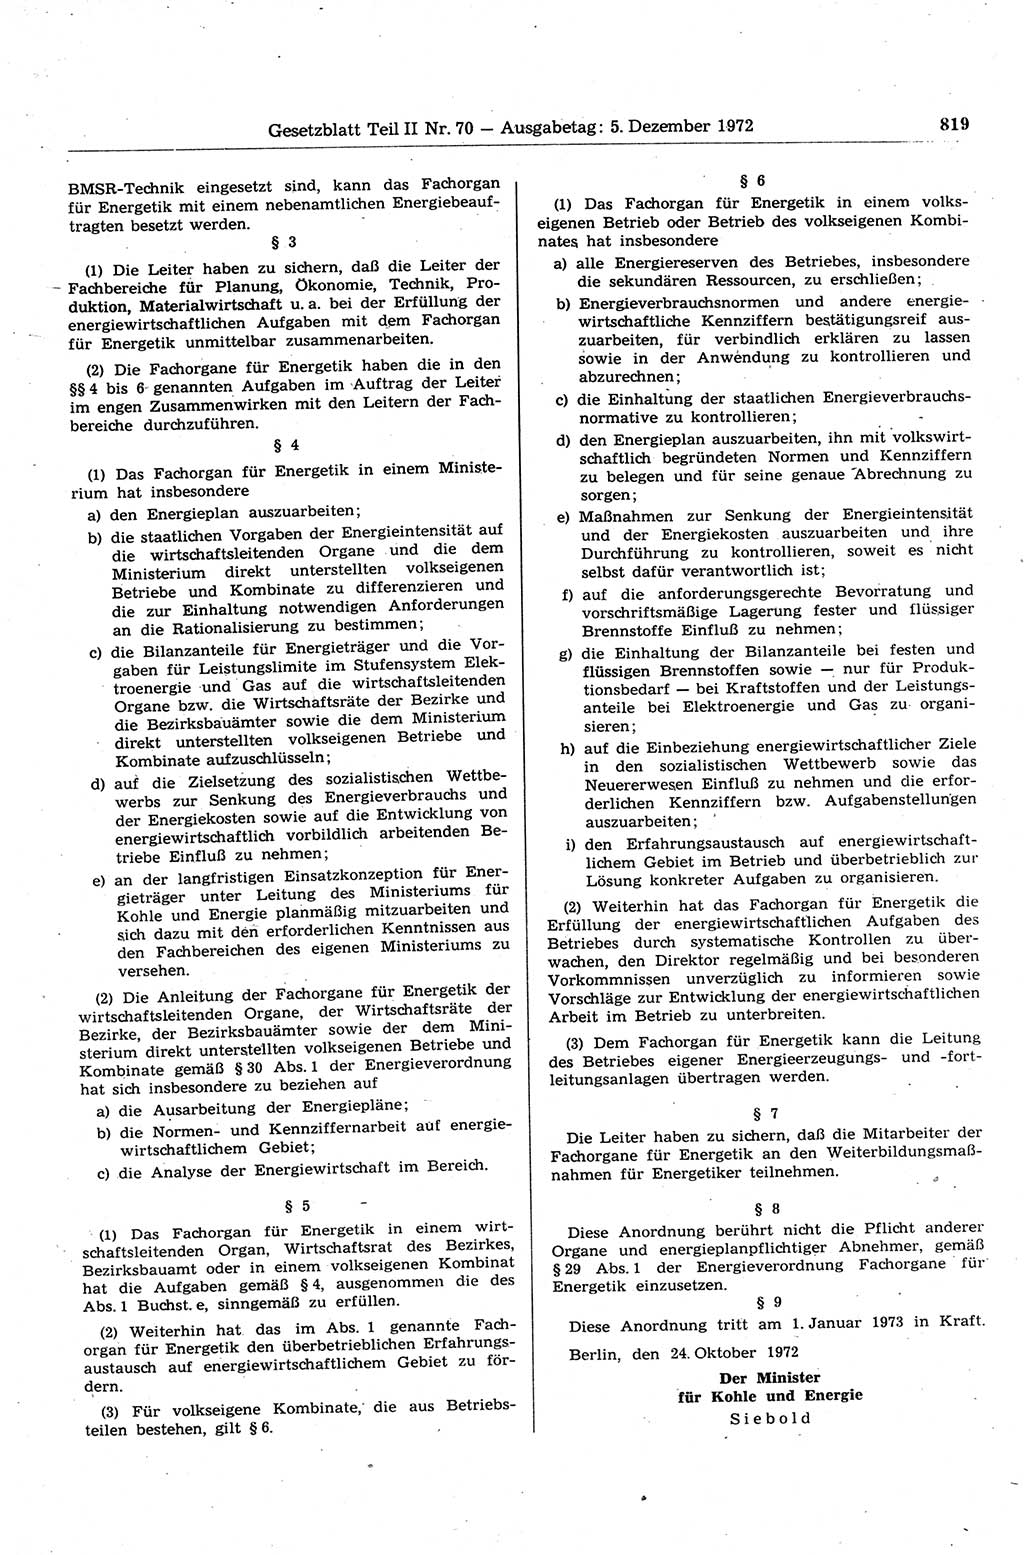 Gesetzblatt (GBl.) der Deutschen Demokratischen Republik (DDR) Teil ⅠⅠ 1972, Seite 819 (GBl. DDR ⅠⅠ 1972, S. 819)